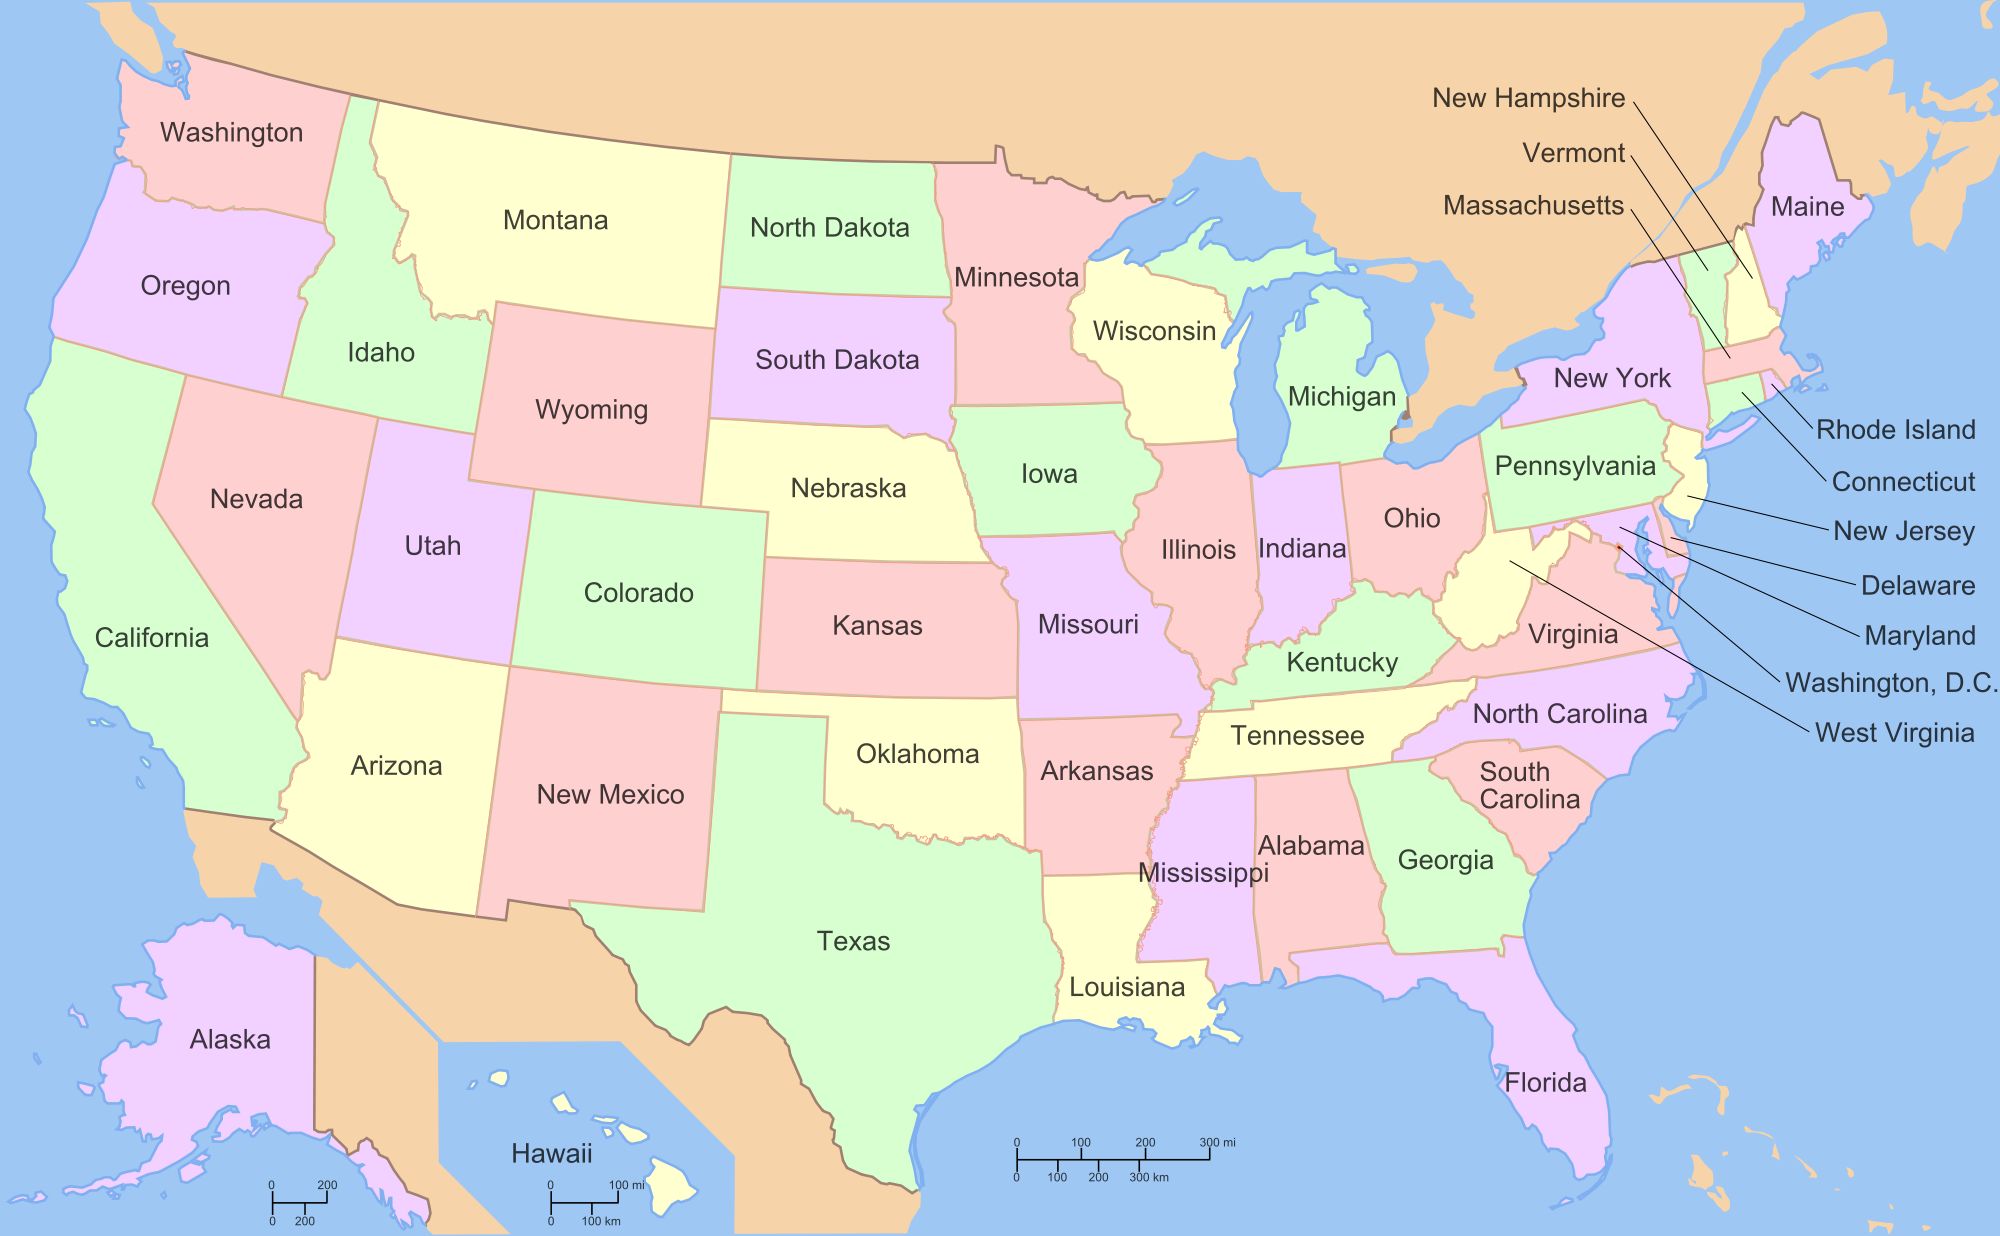 742229 Обои и Карта Соединенных Штатов Америки картинки на рабочий стол. Скачать  заставки на ПК бесплатно